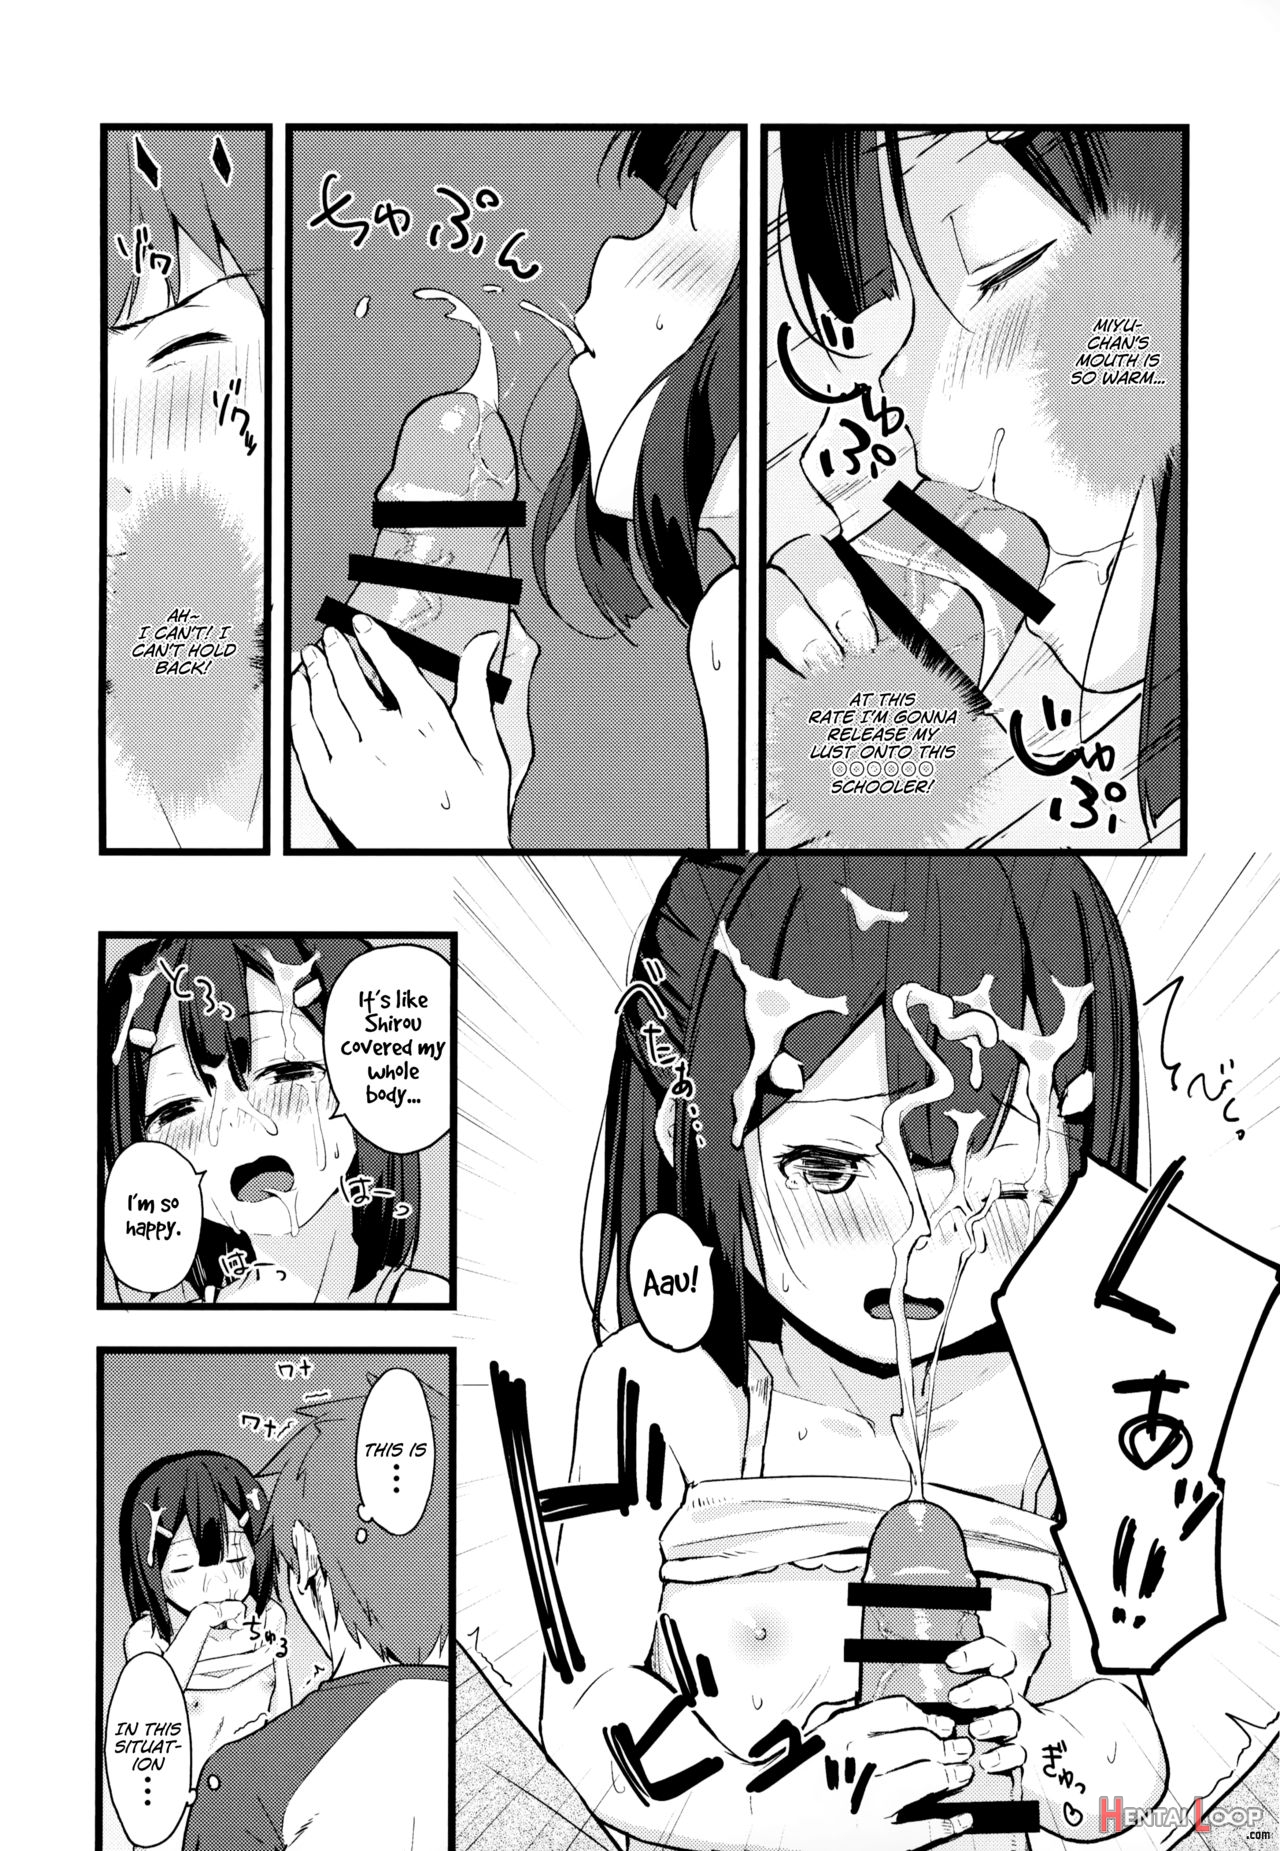 Miyu-chan No Install! Sweet Sister! page 8